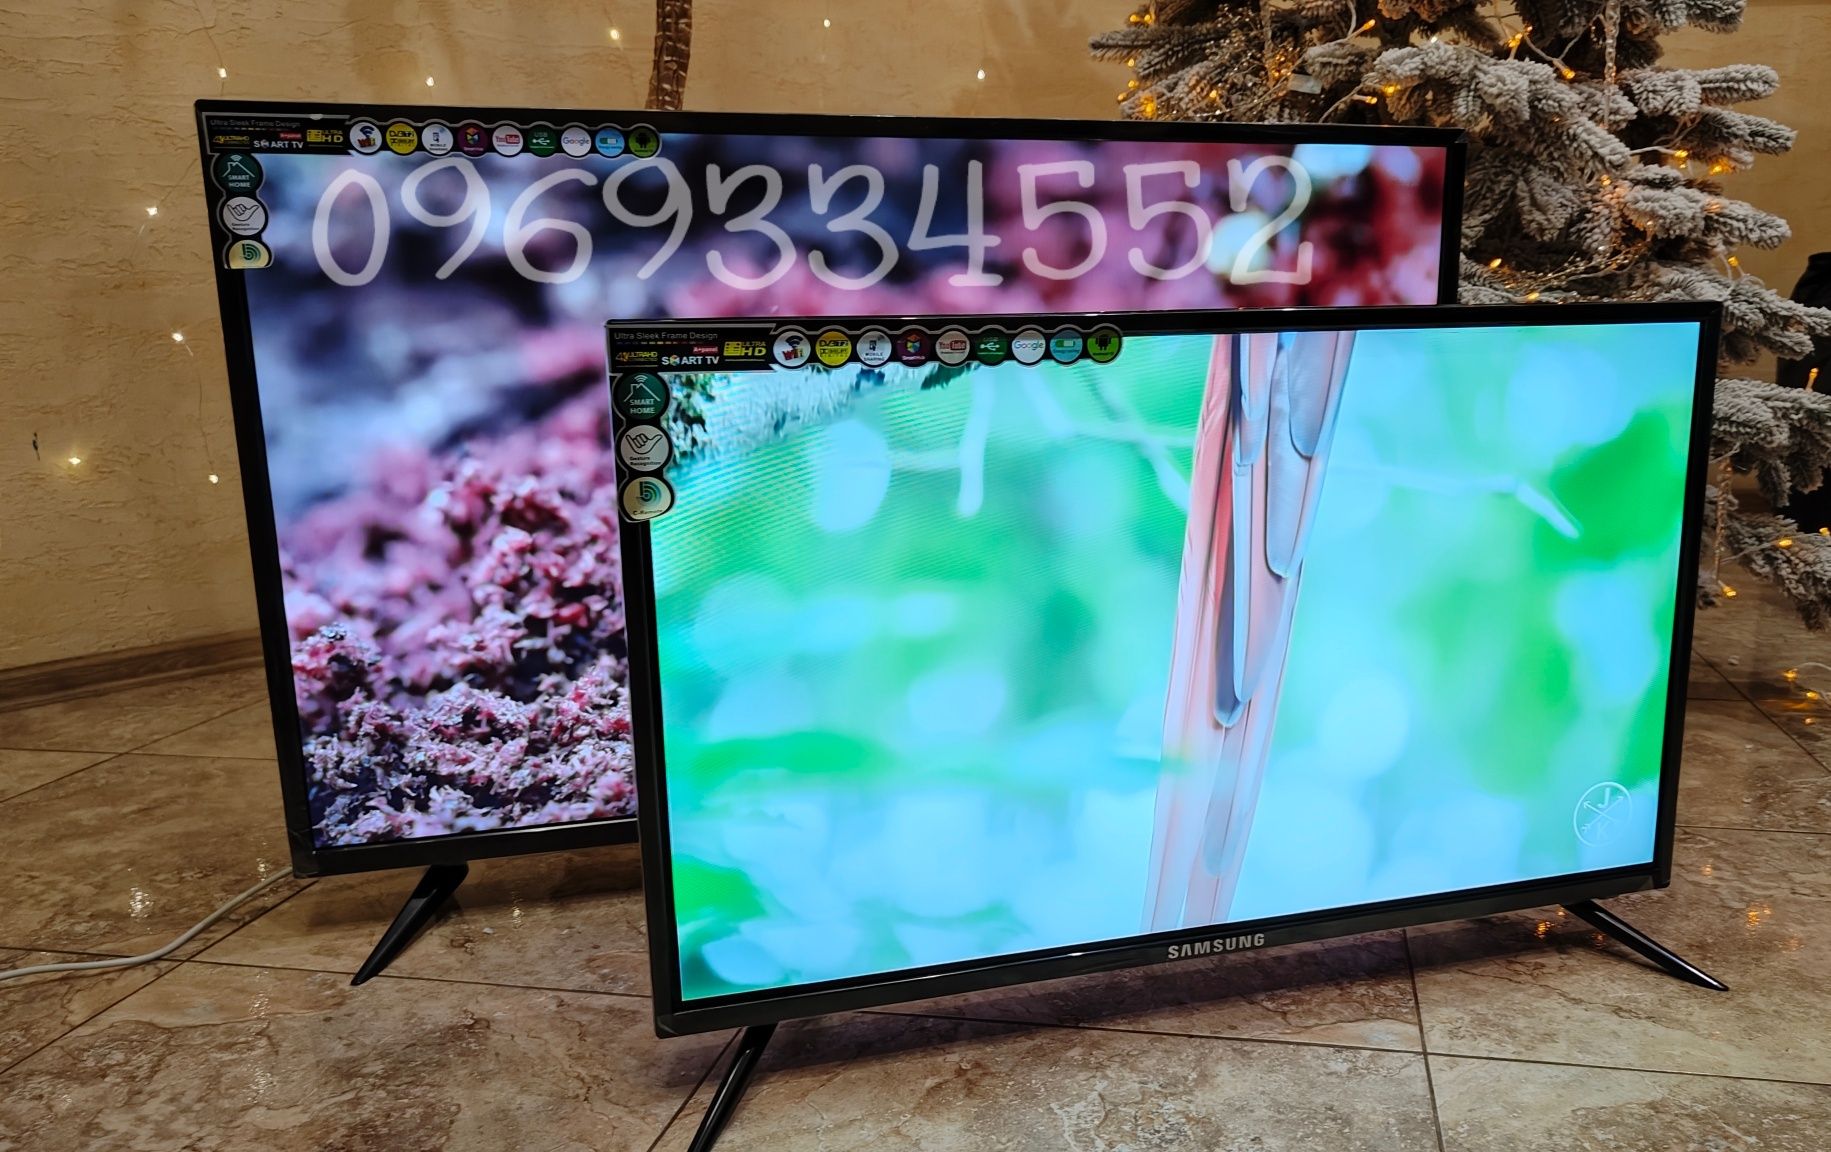 Цены от склада! Телевизоры Samsung Smart TV,45,32 дюйма